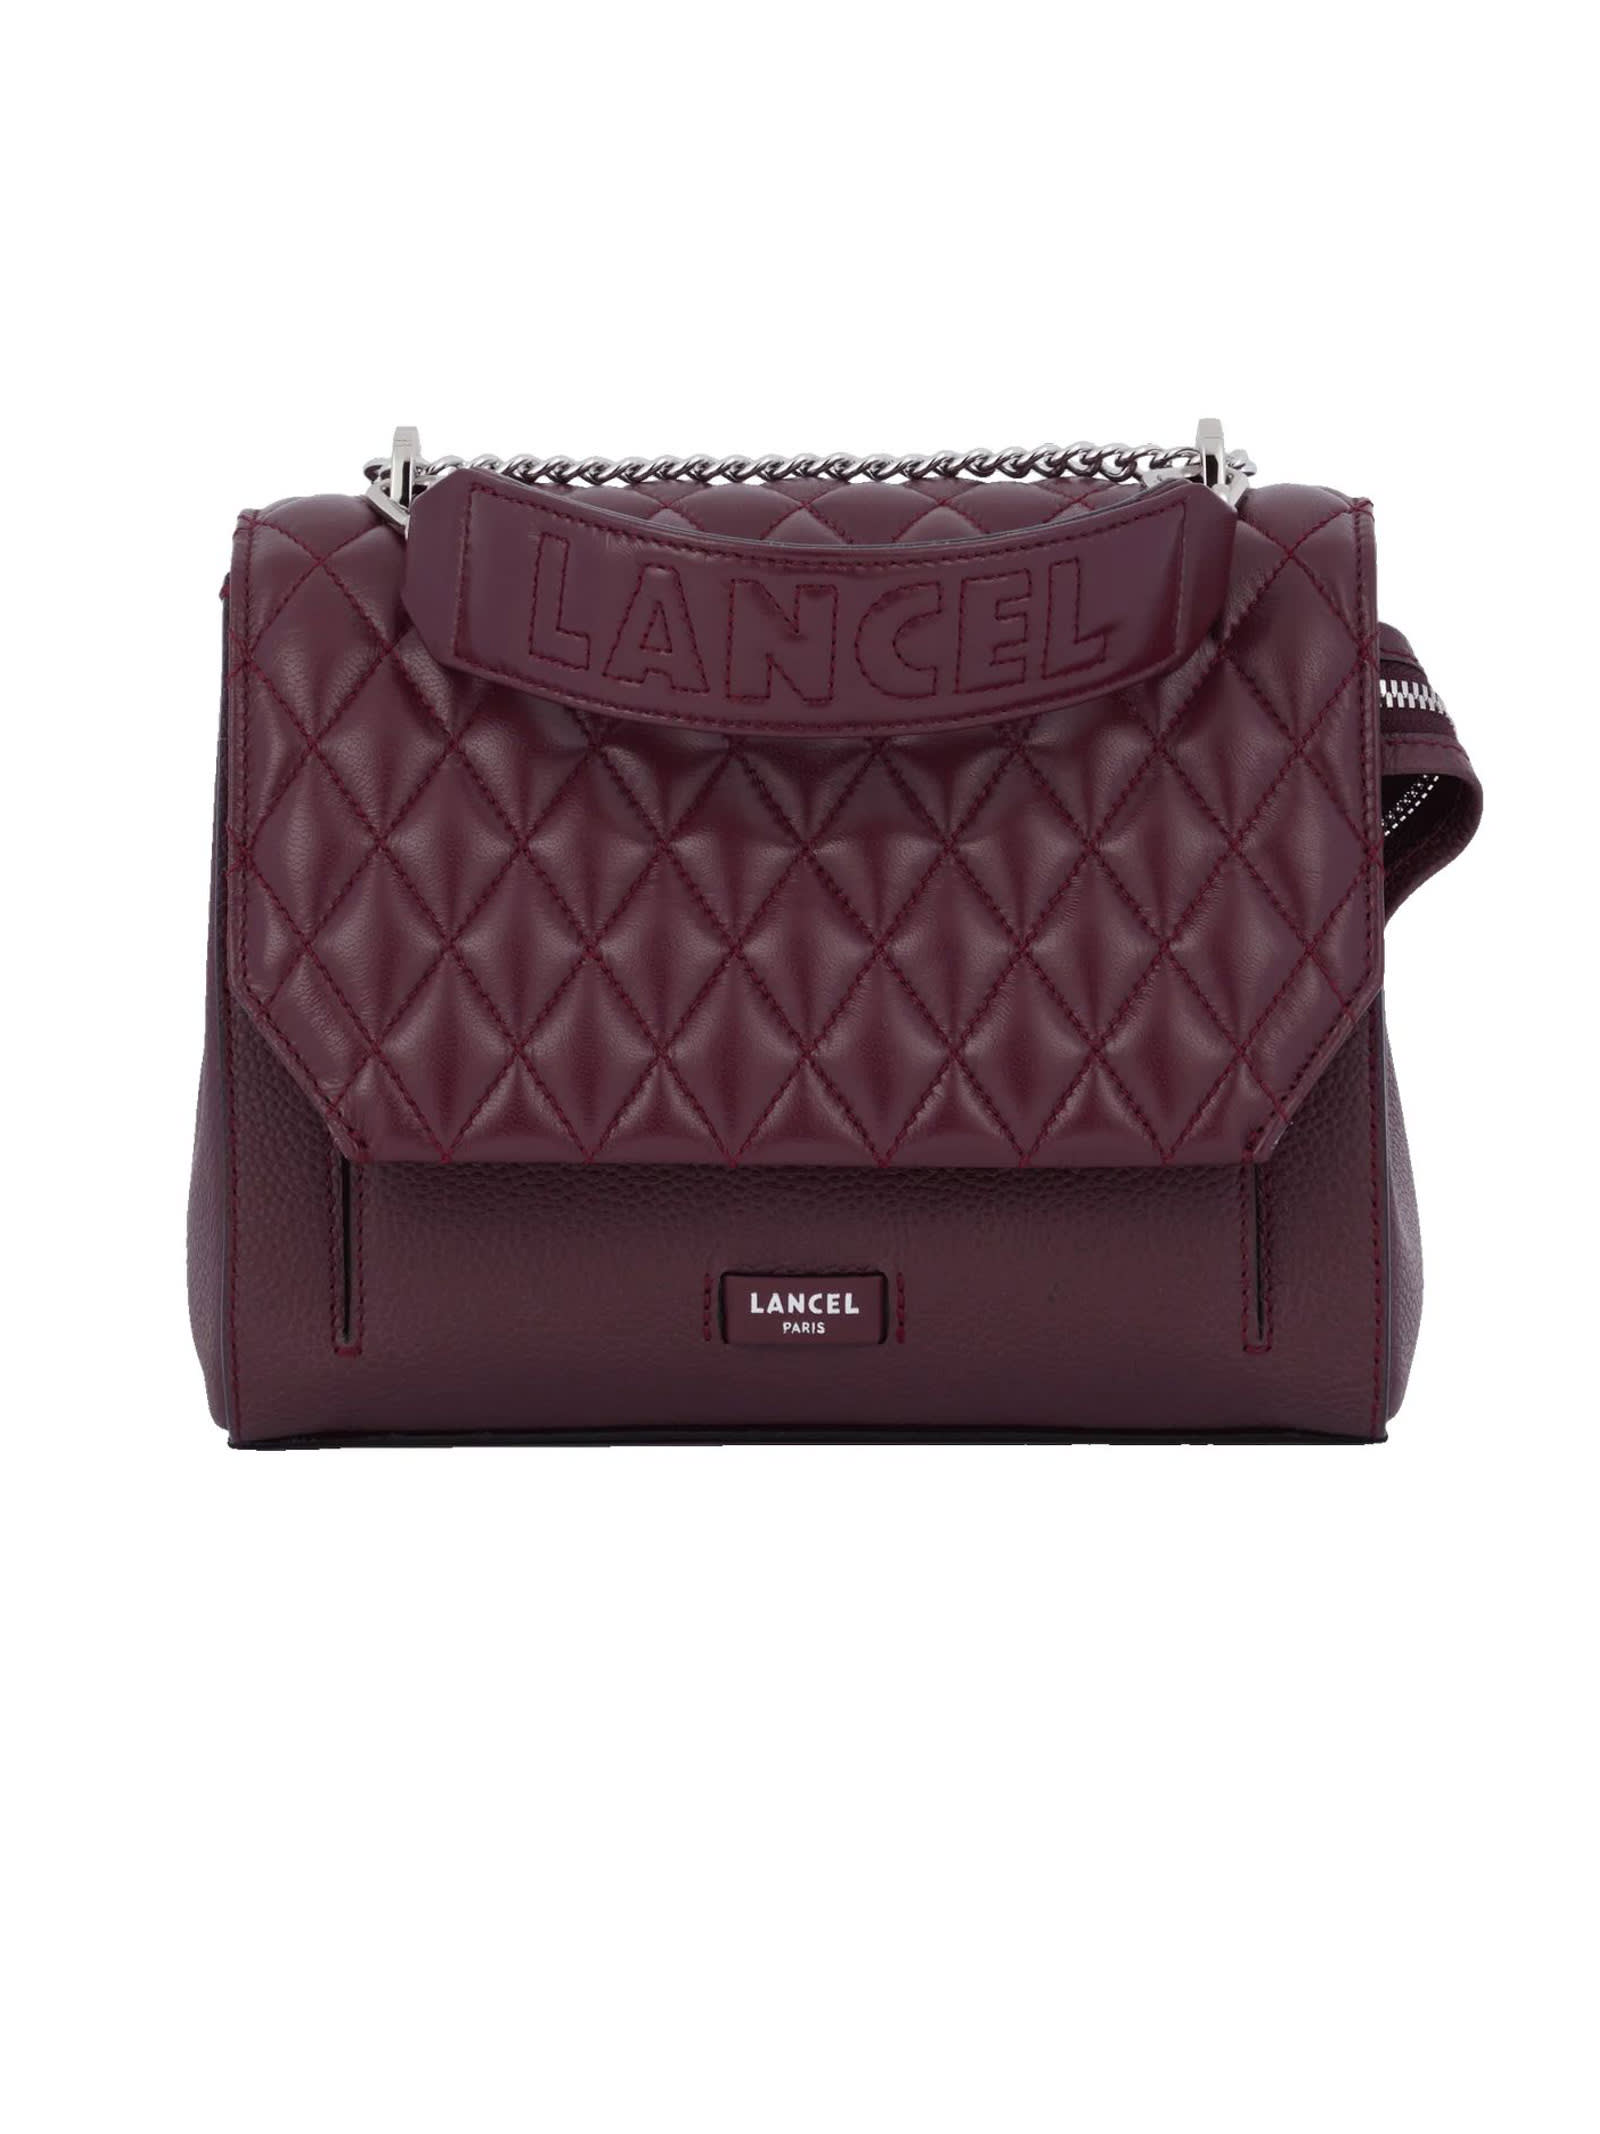 Lancel Beige Calf Leather Shoulder Bag